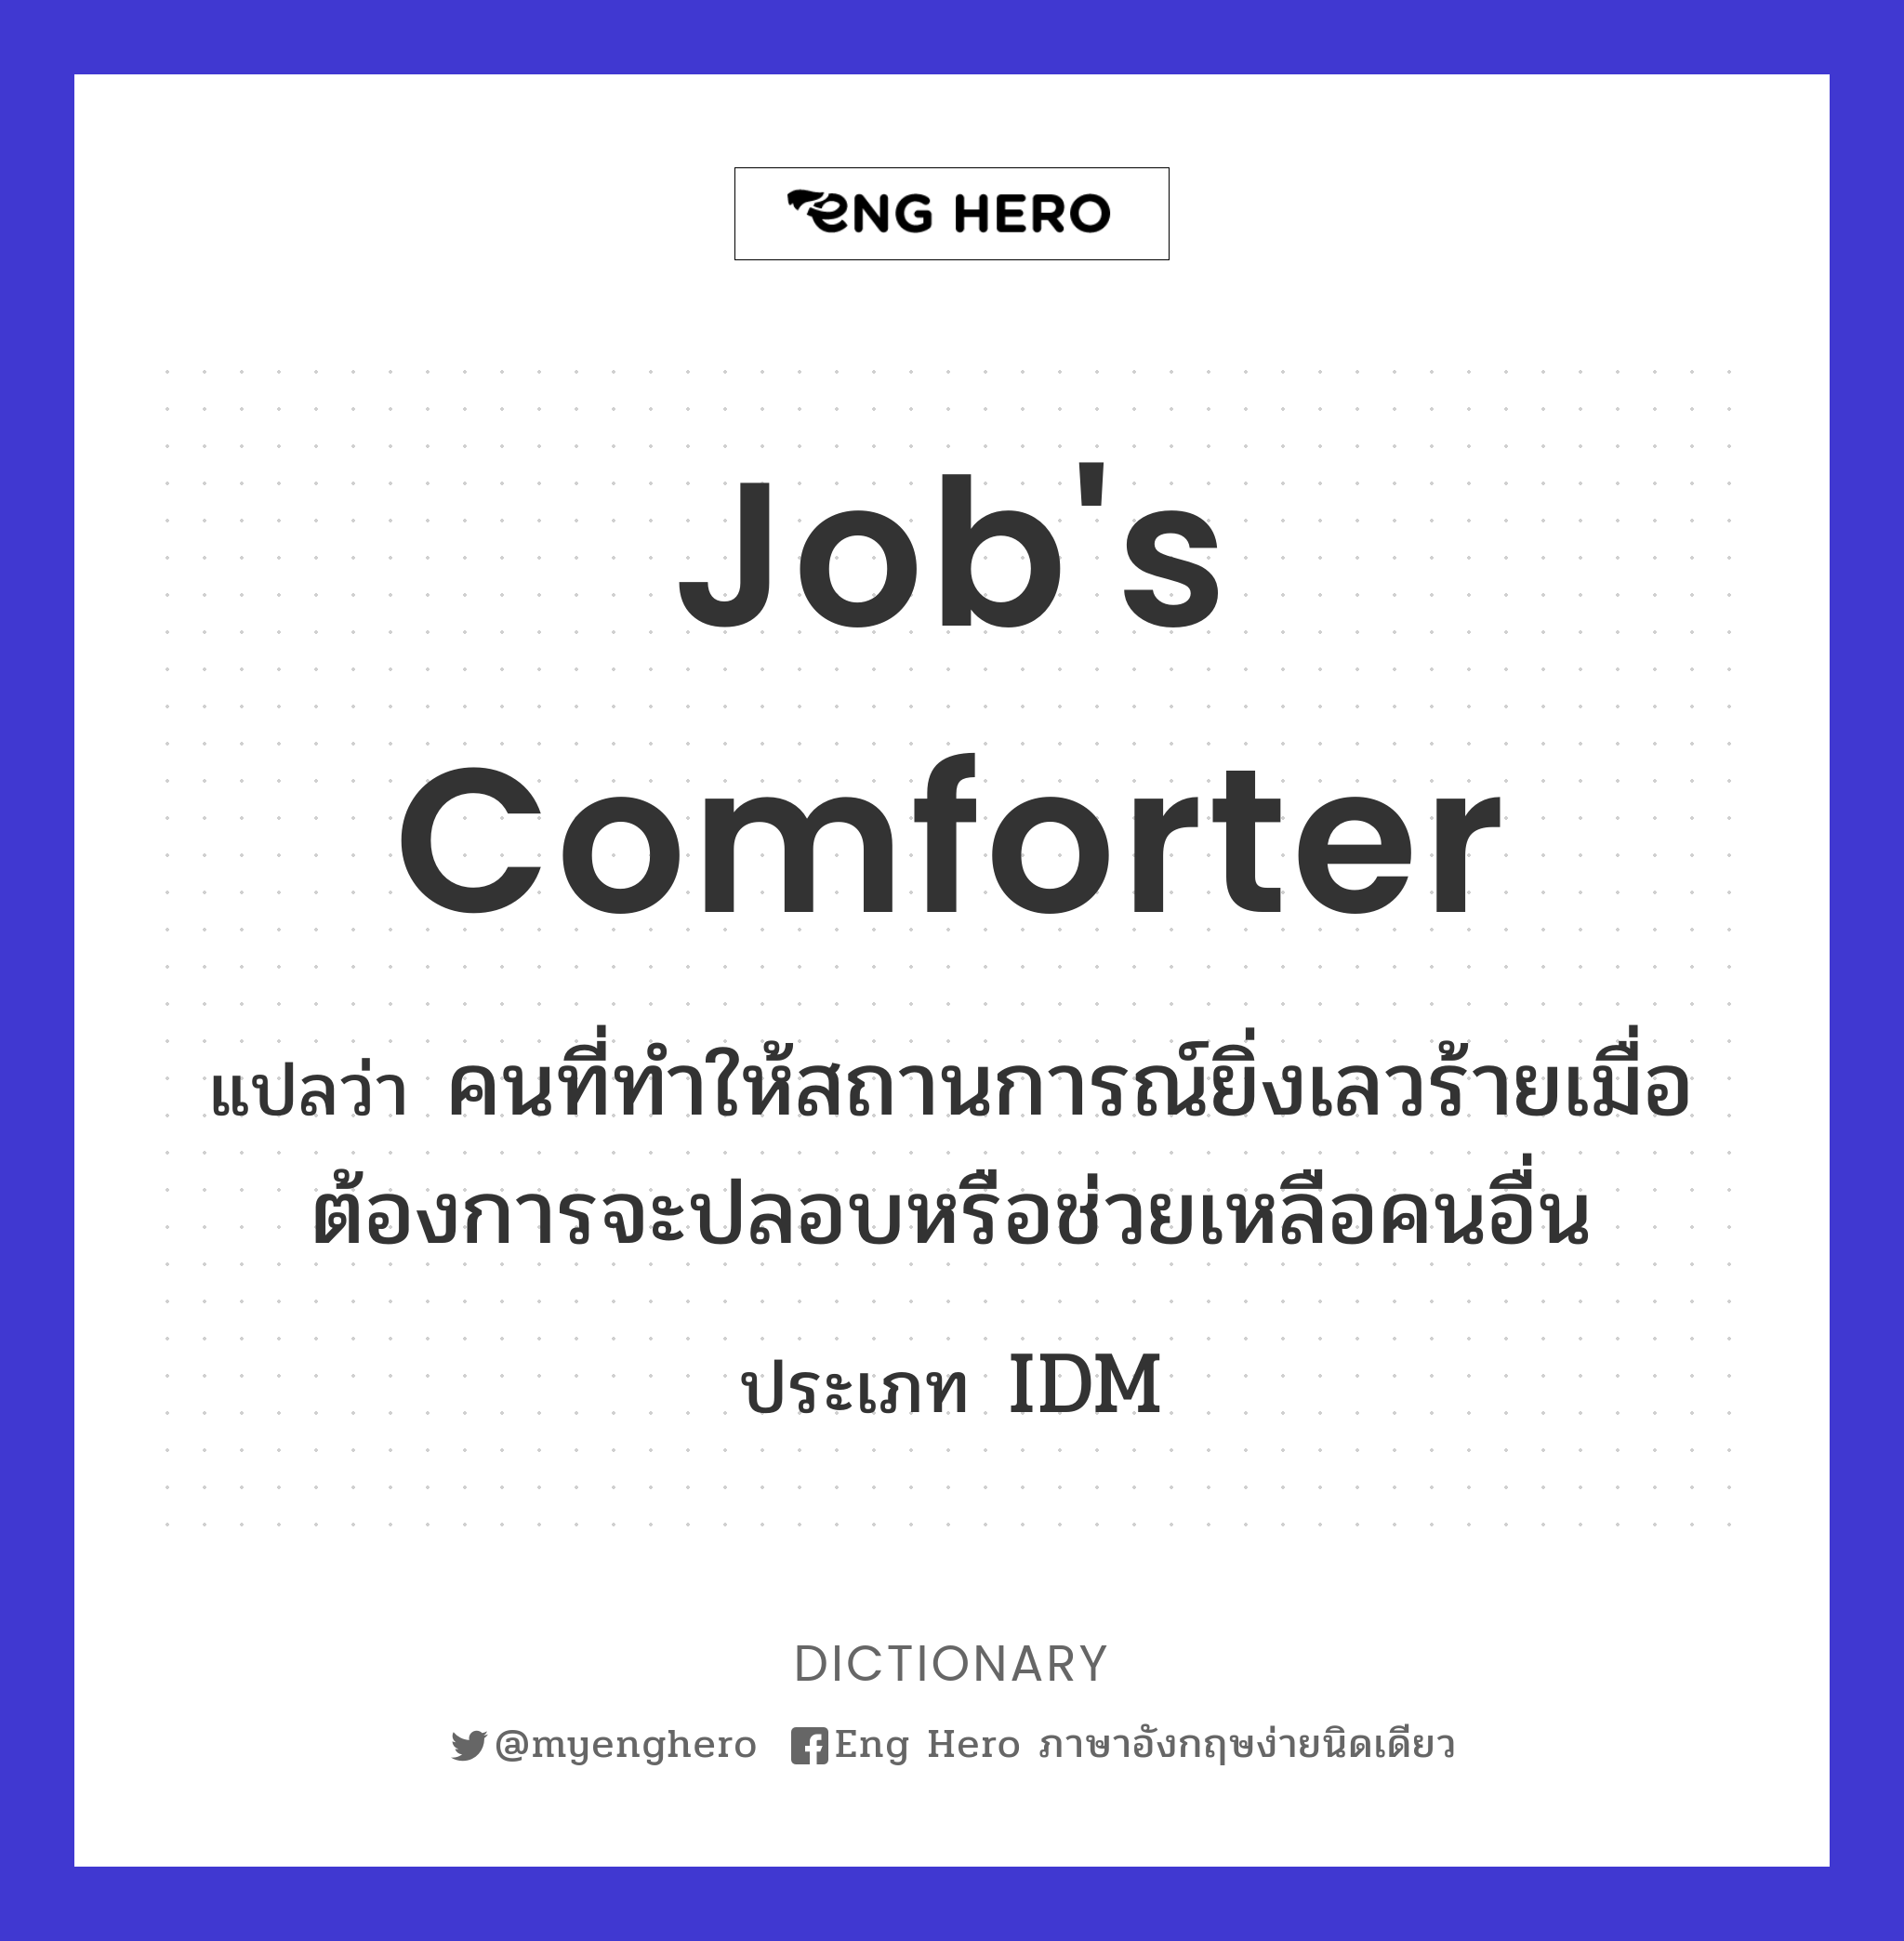 Job's comforter